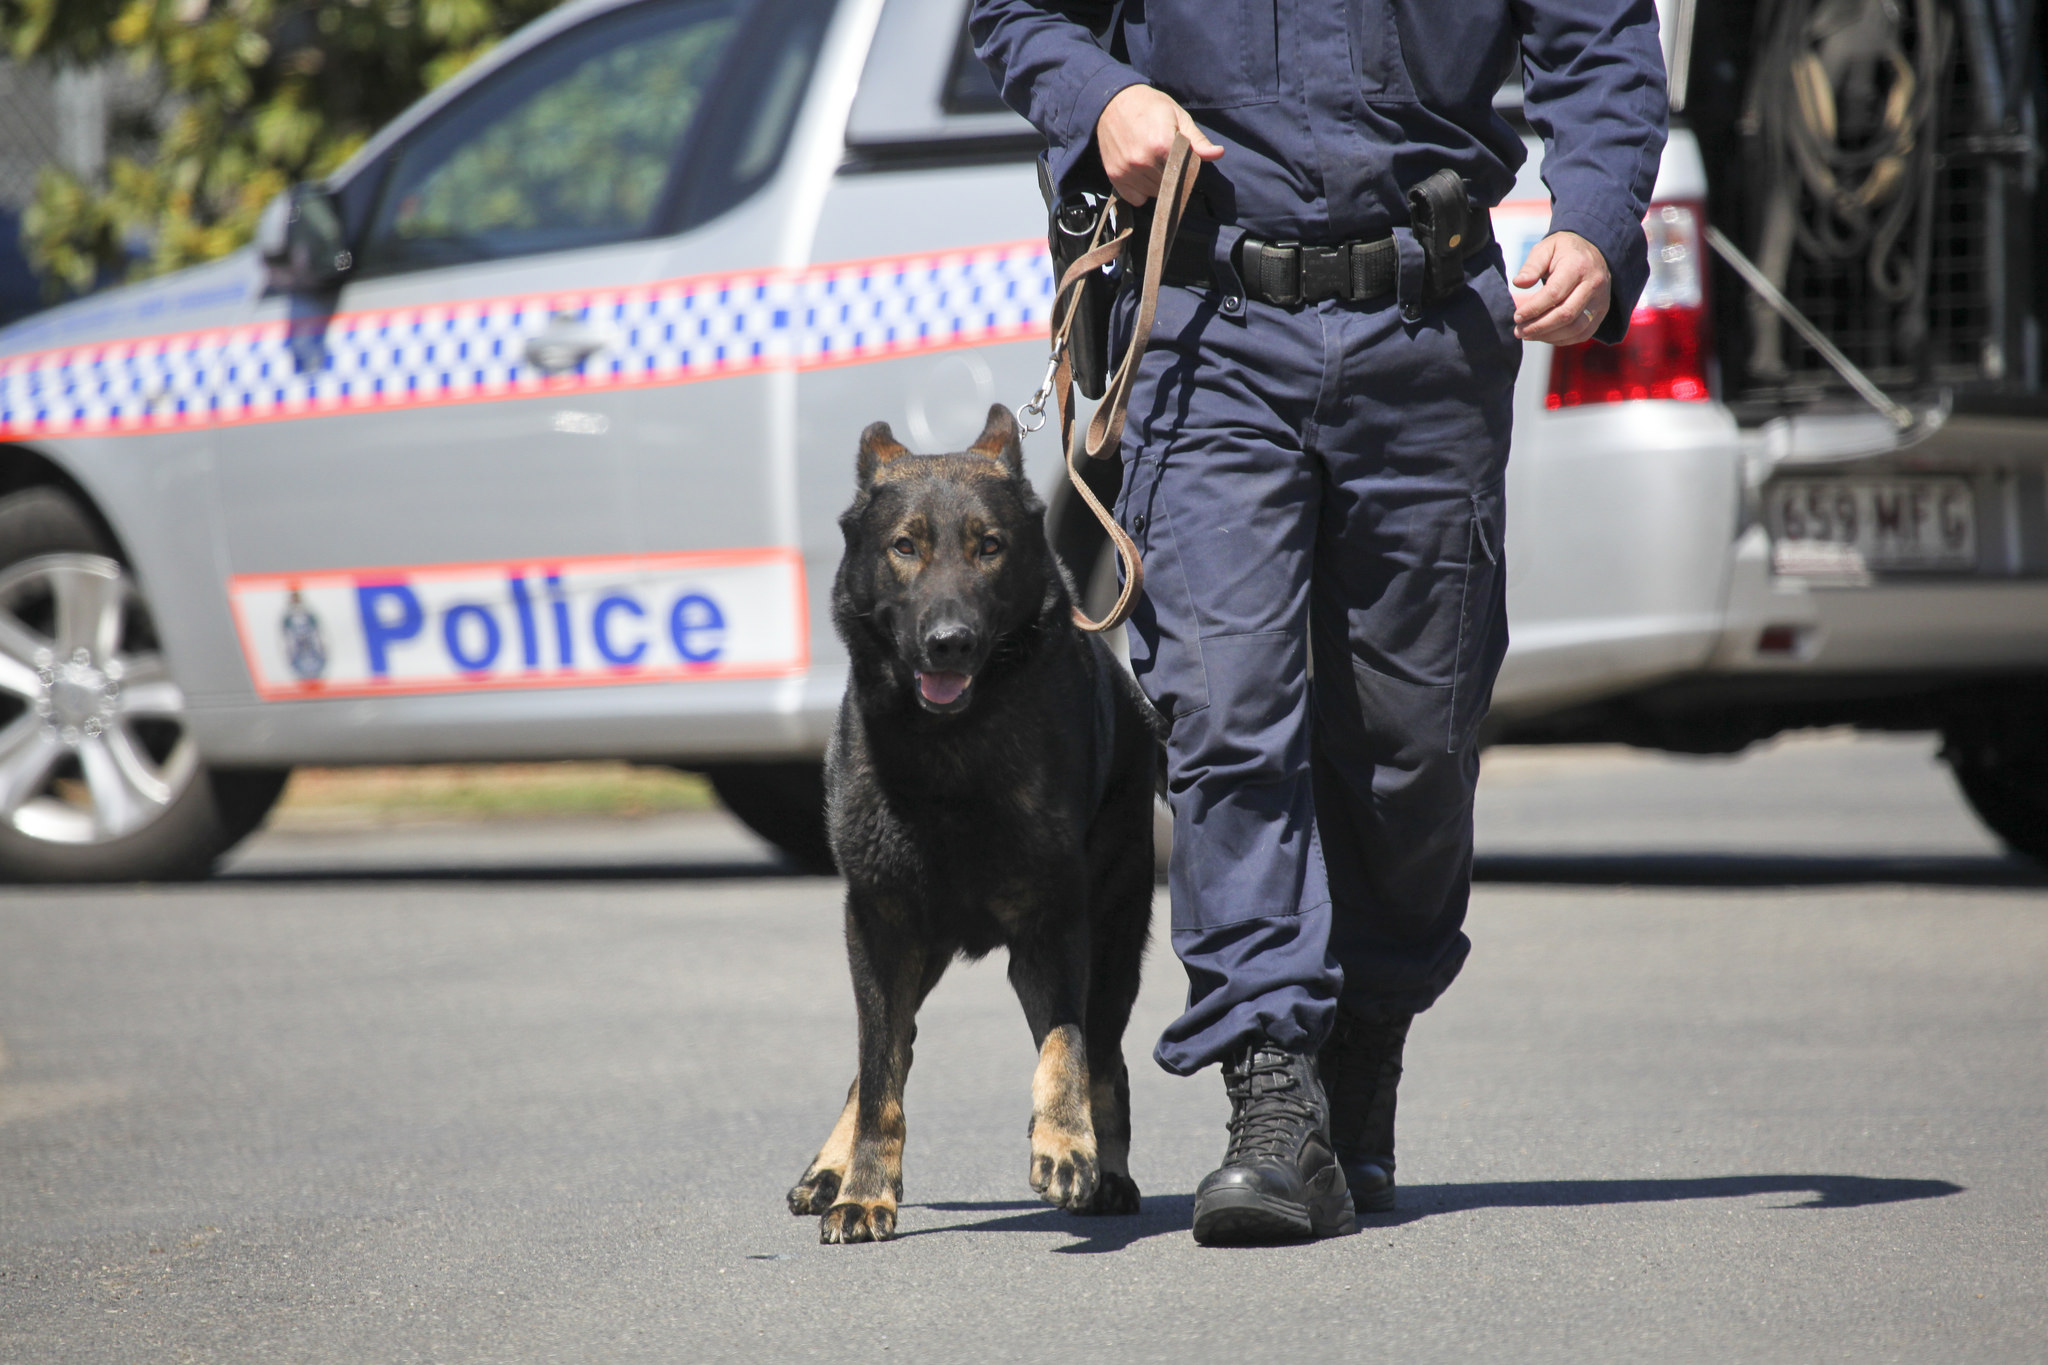 Police Dog and handler